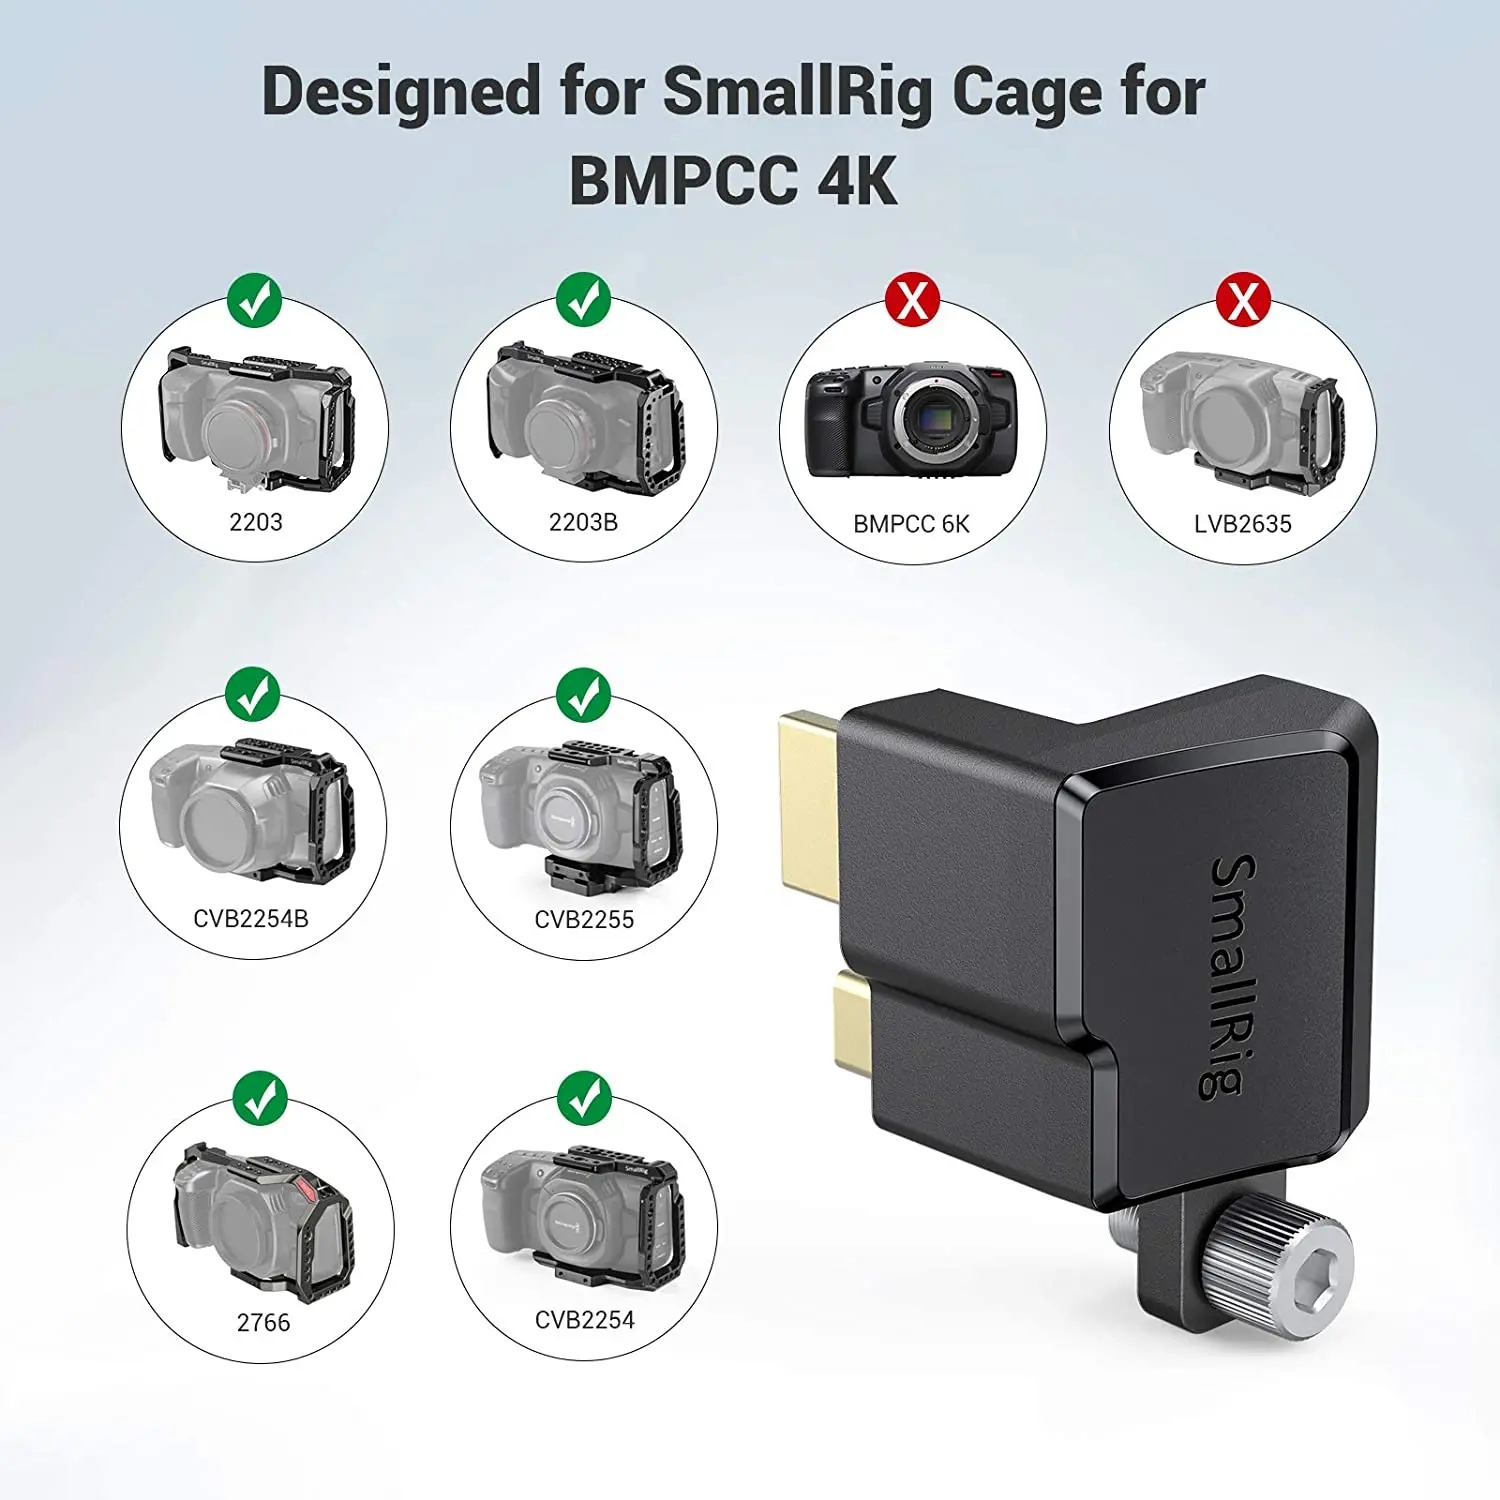 SmallRig Tipas-C stačiu Kampu Adapteris BMPCC 4K vaizdo Kamera Narve DSLR Fotoaparatas Įrenginys laikiklis BMPCC 4K vaizdo Kamera 2700